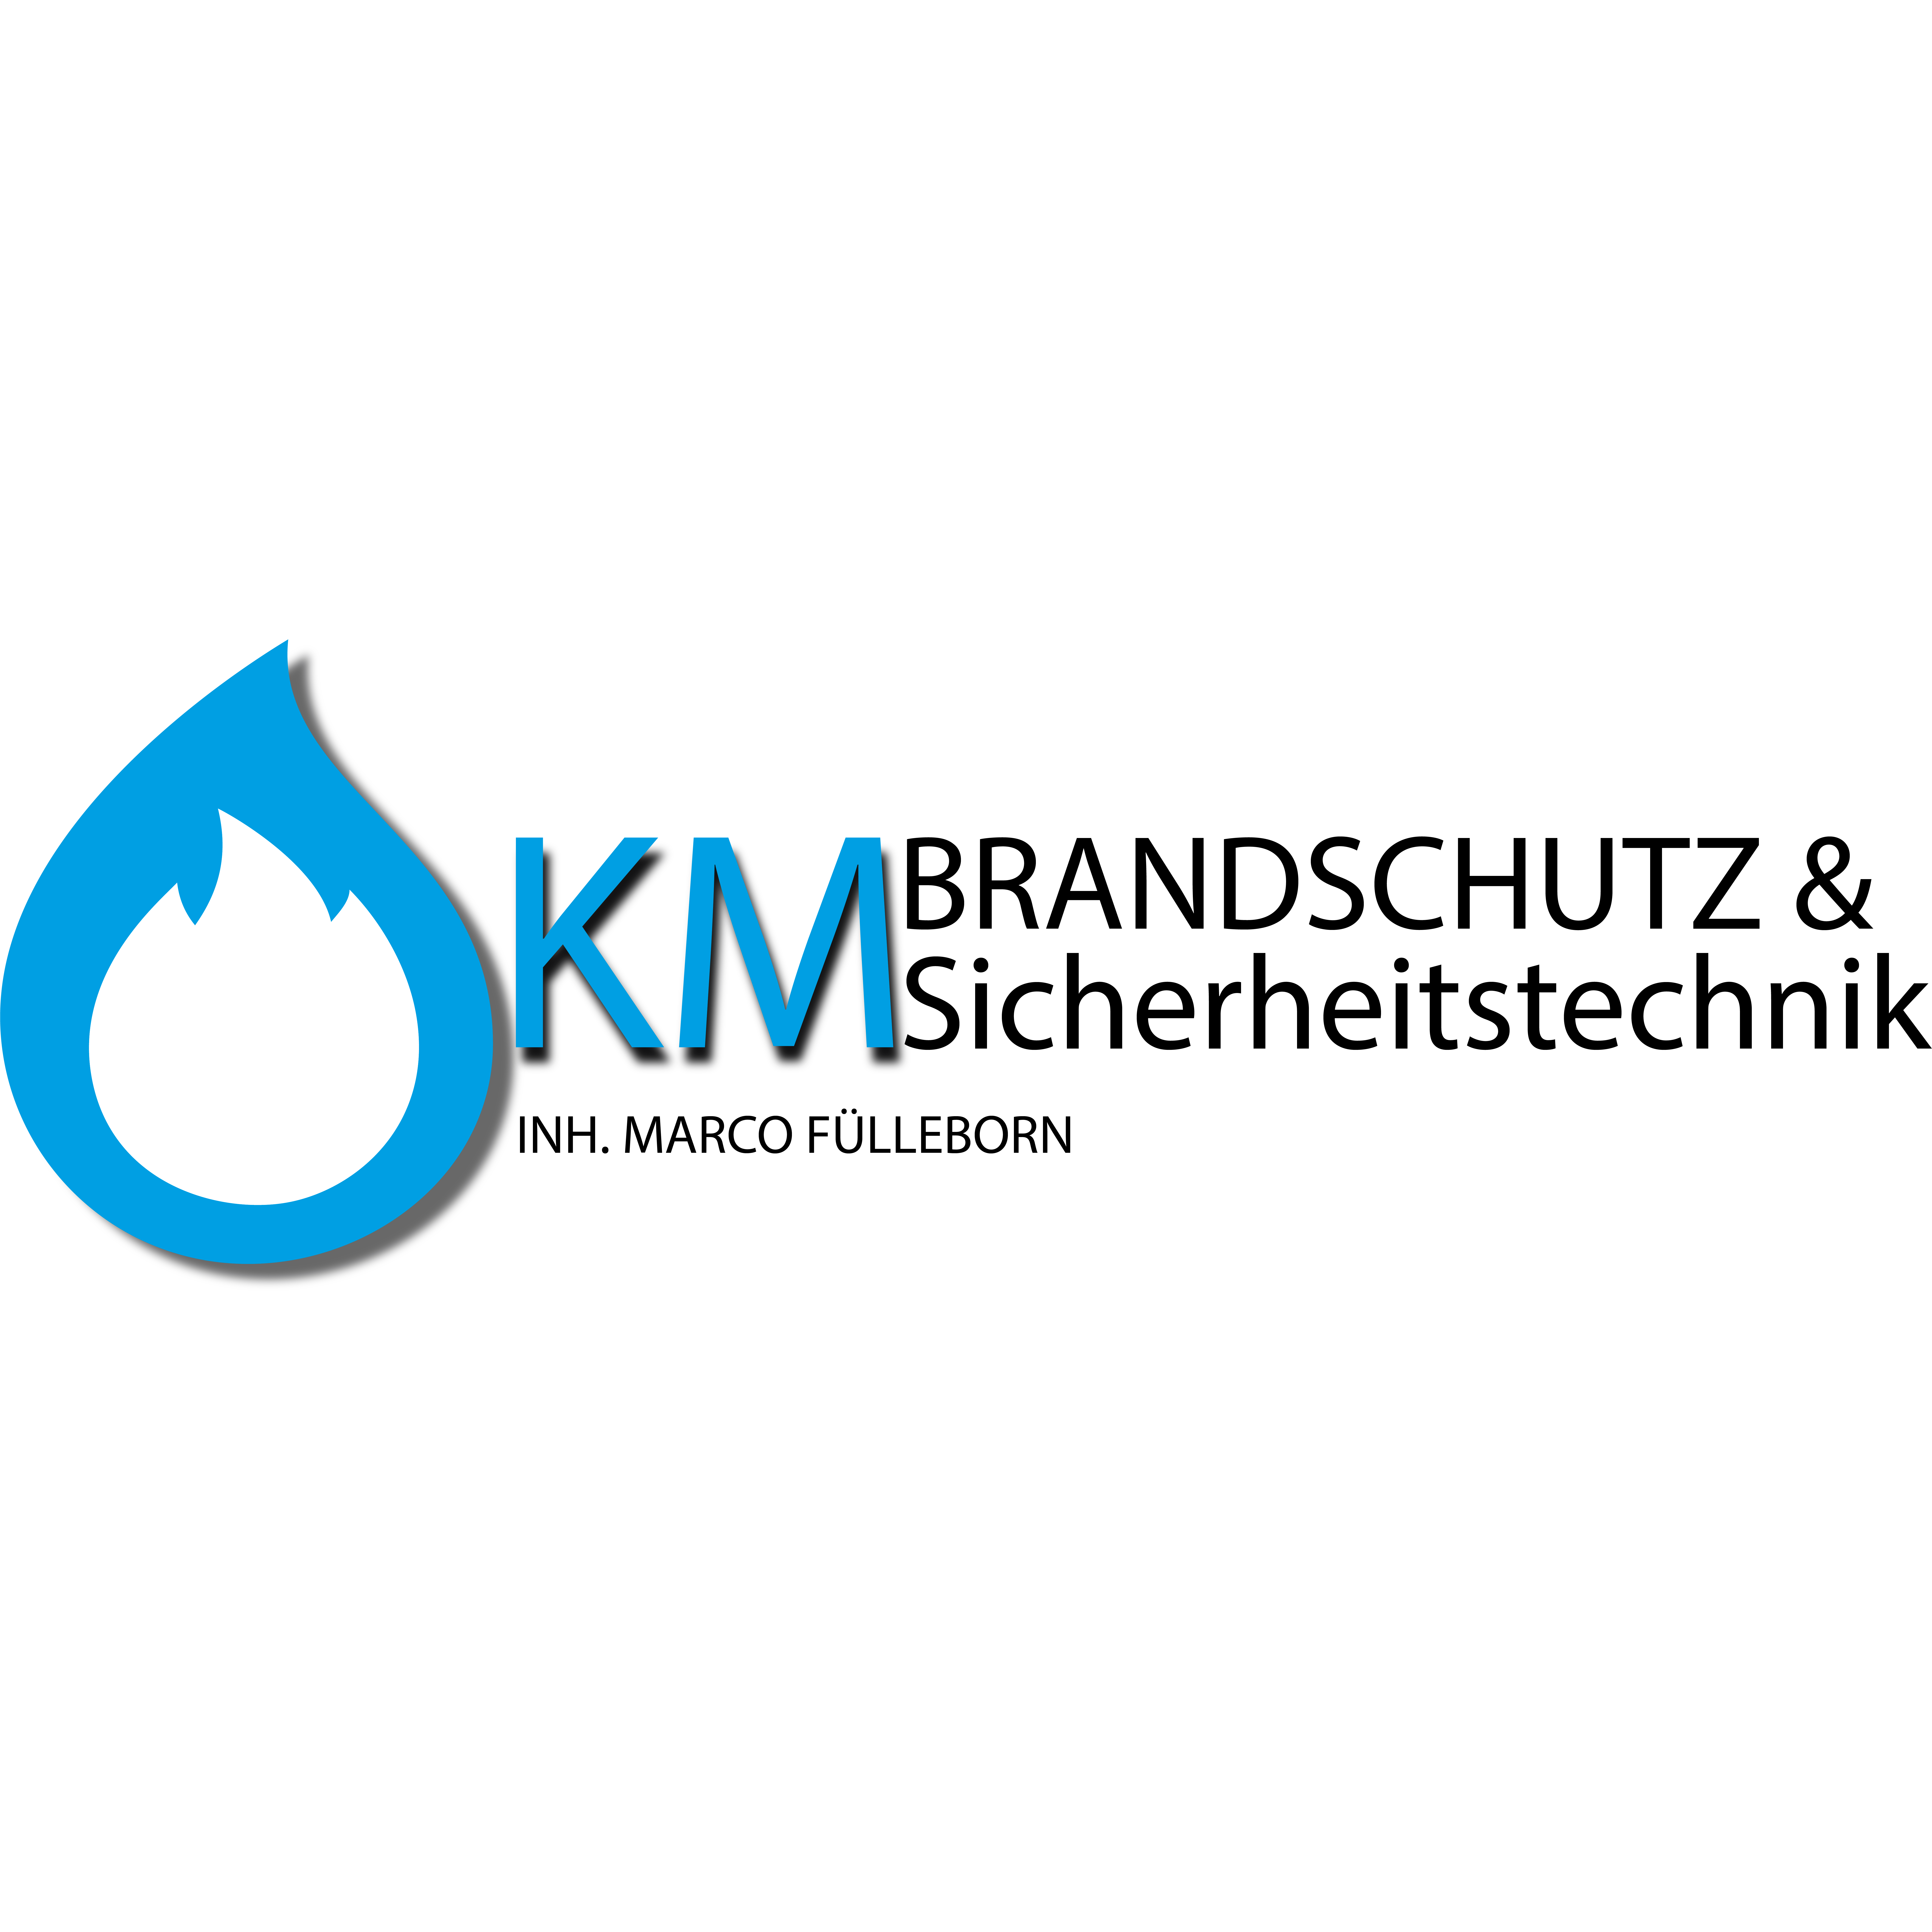 KM Brandschutz und Sicherheitstechnik in Duisburg - Logo